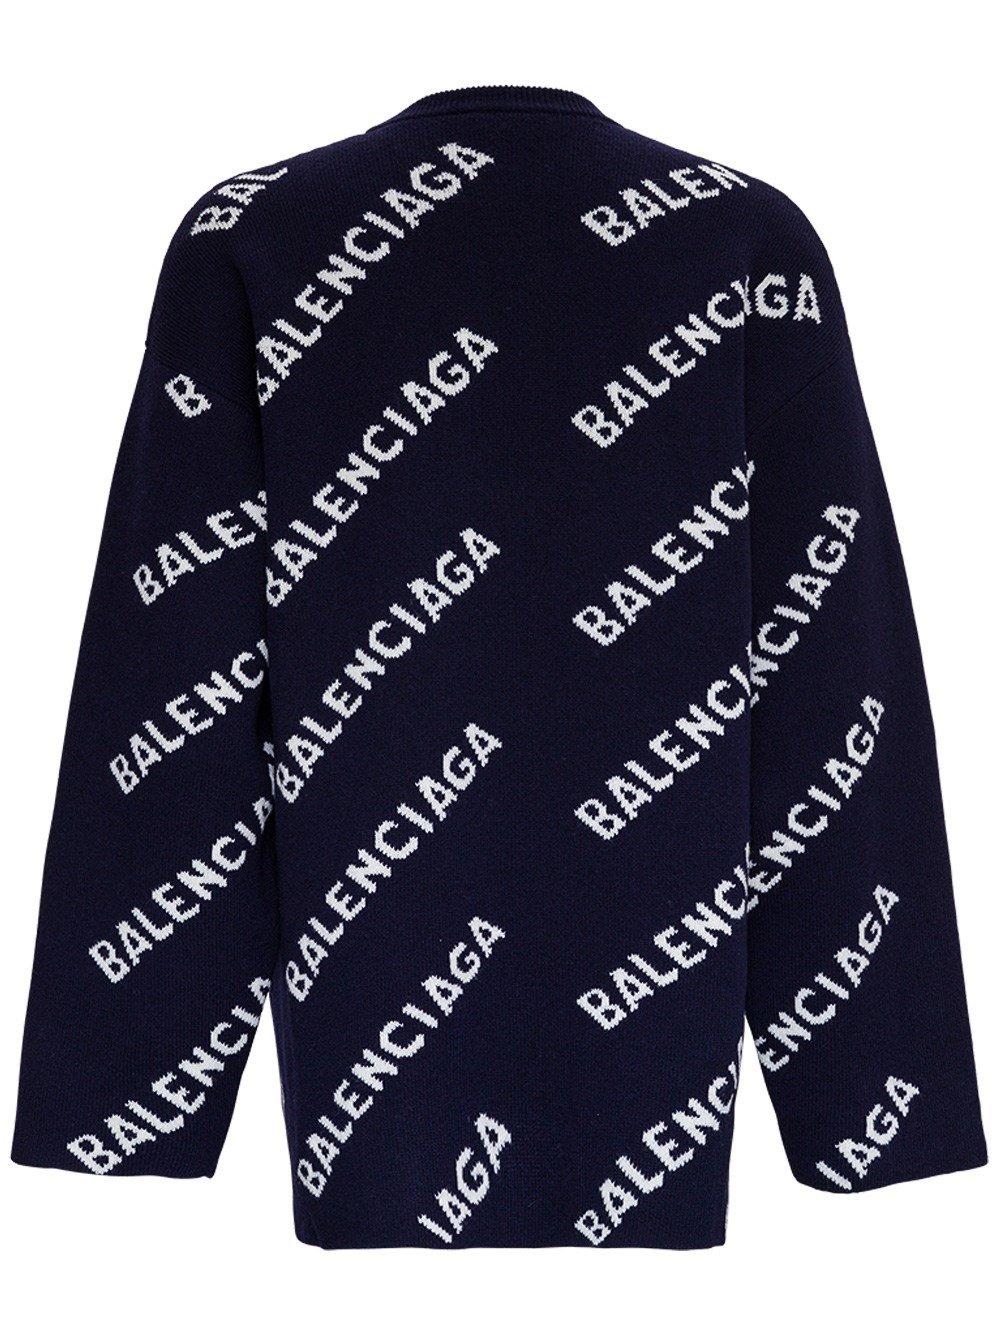 indtil nu Af storm knus Balenciaga Intarsia-knit Logo Jumper in Blue for Men | Lyst